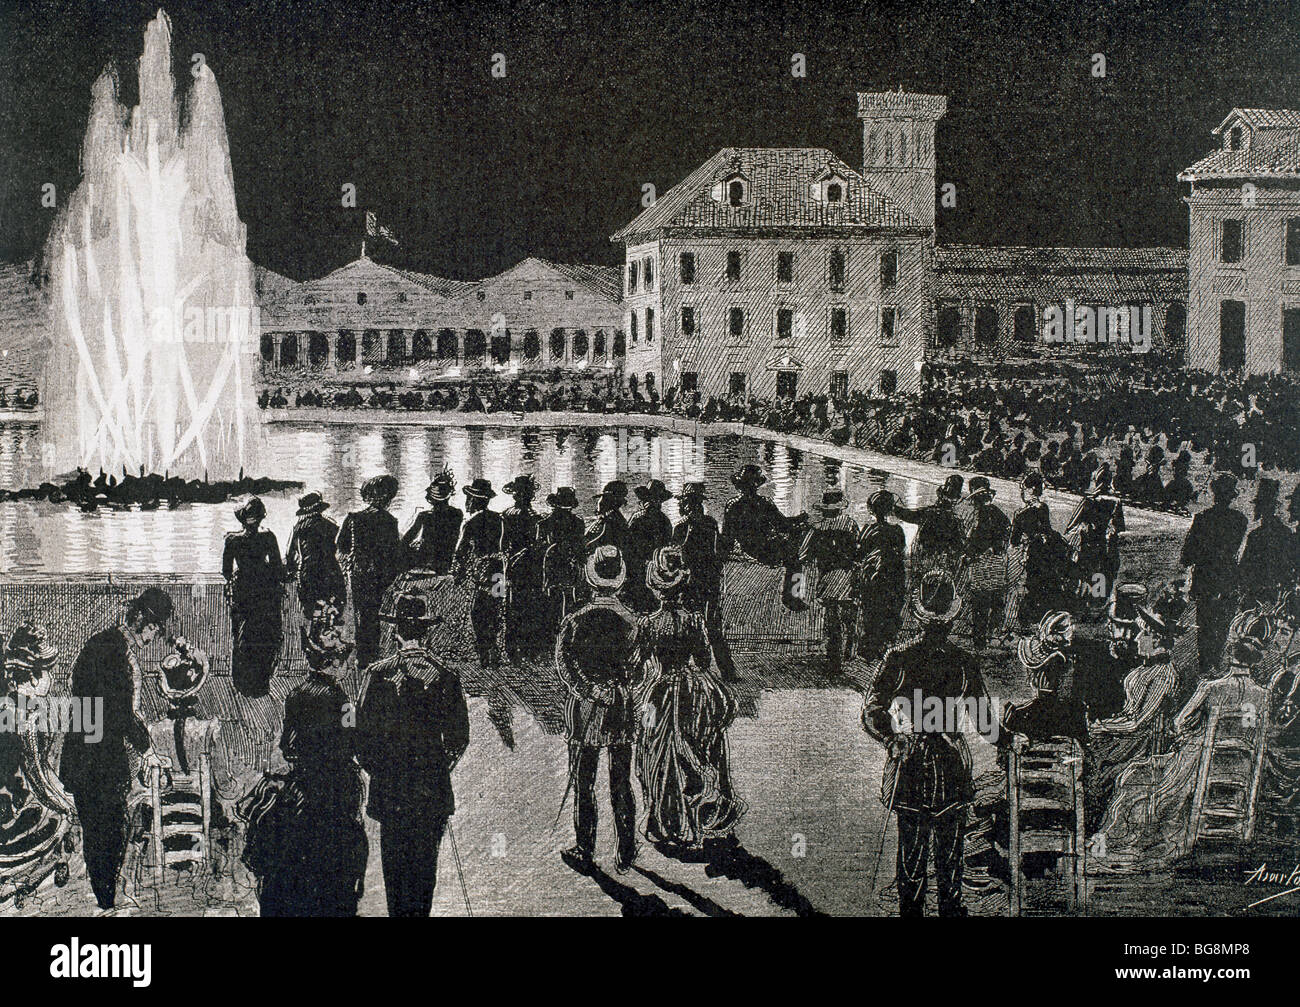 Barcellona. 1888 della fiera del mondo. 'Magic Fontana". Disegno di Asarta in 'La Ilustracion Iberica' (1888). Foto Stock